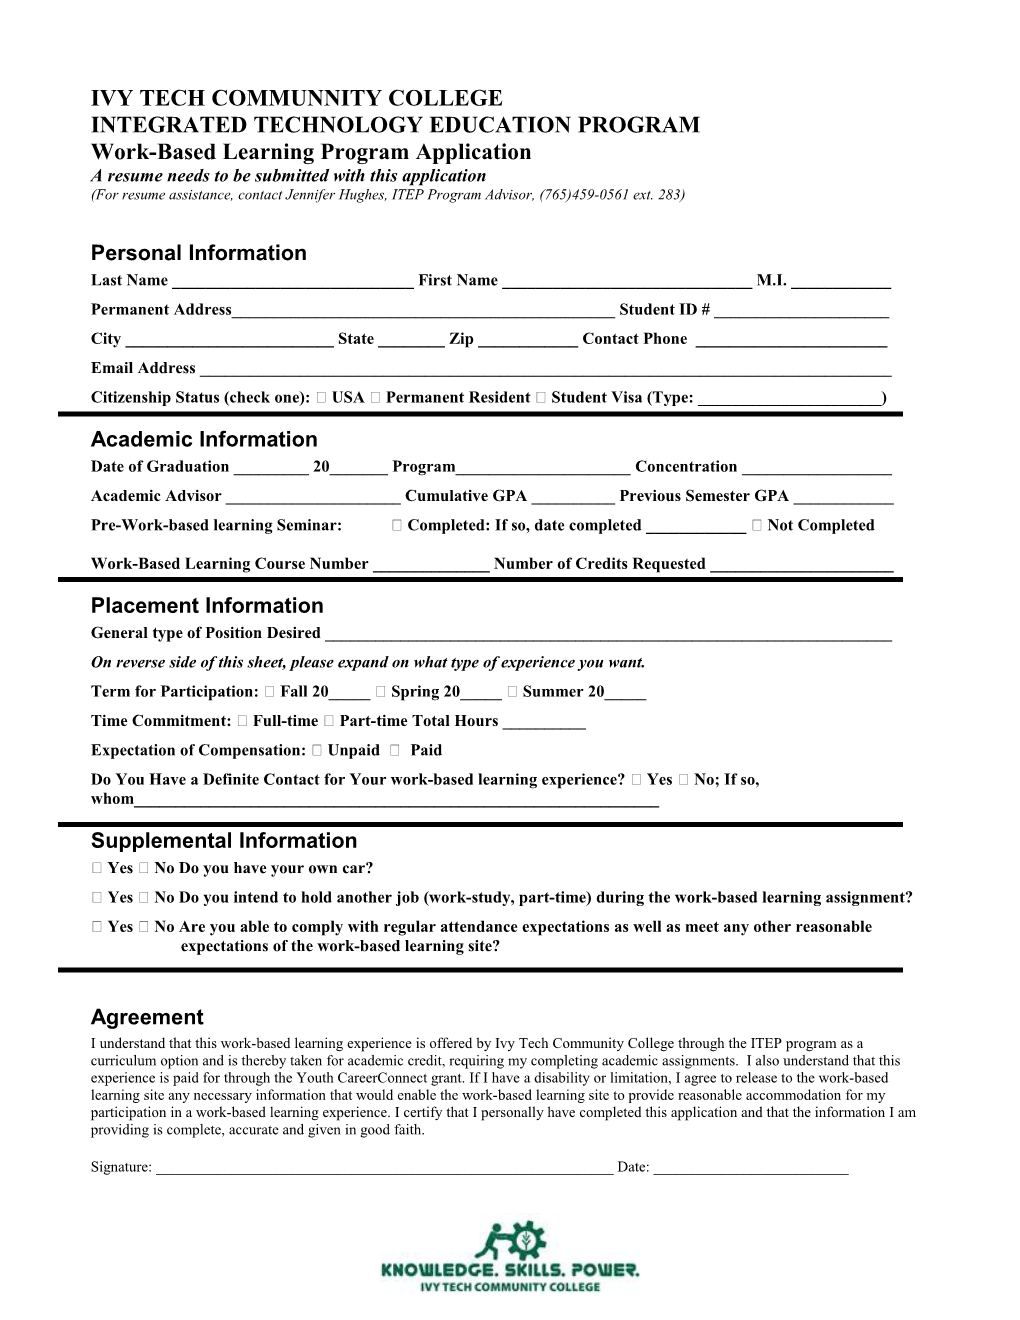 Internship Program Application Revised on 9/04/04